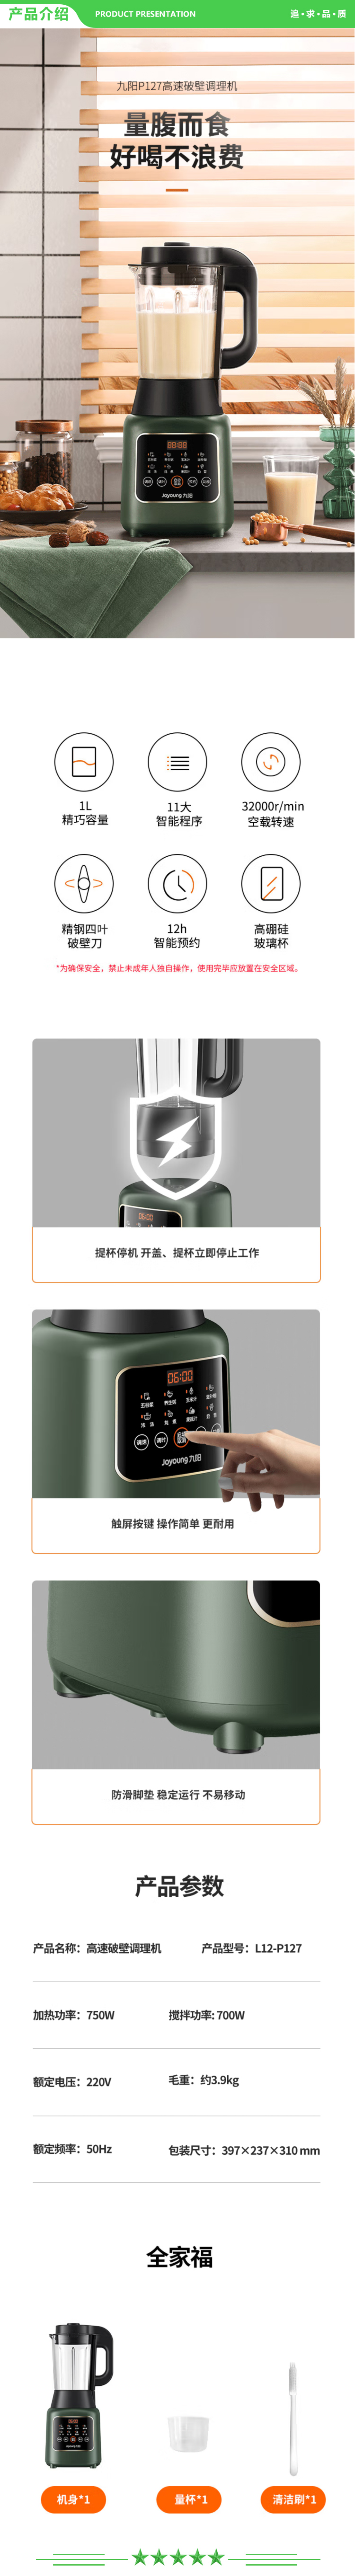 九阳 Joyoung L12-P127 破壁机多功能 小型预约加热破壁料理榨汁豆浆绞肉辅食机.jpg